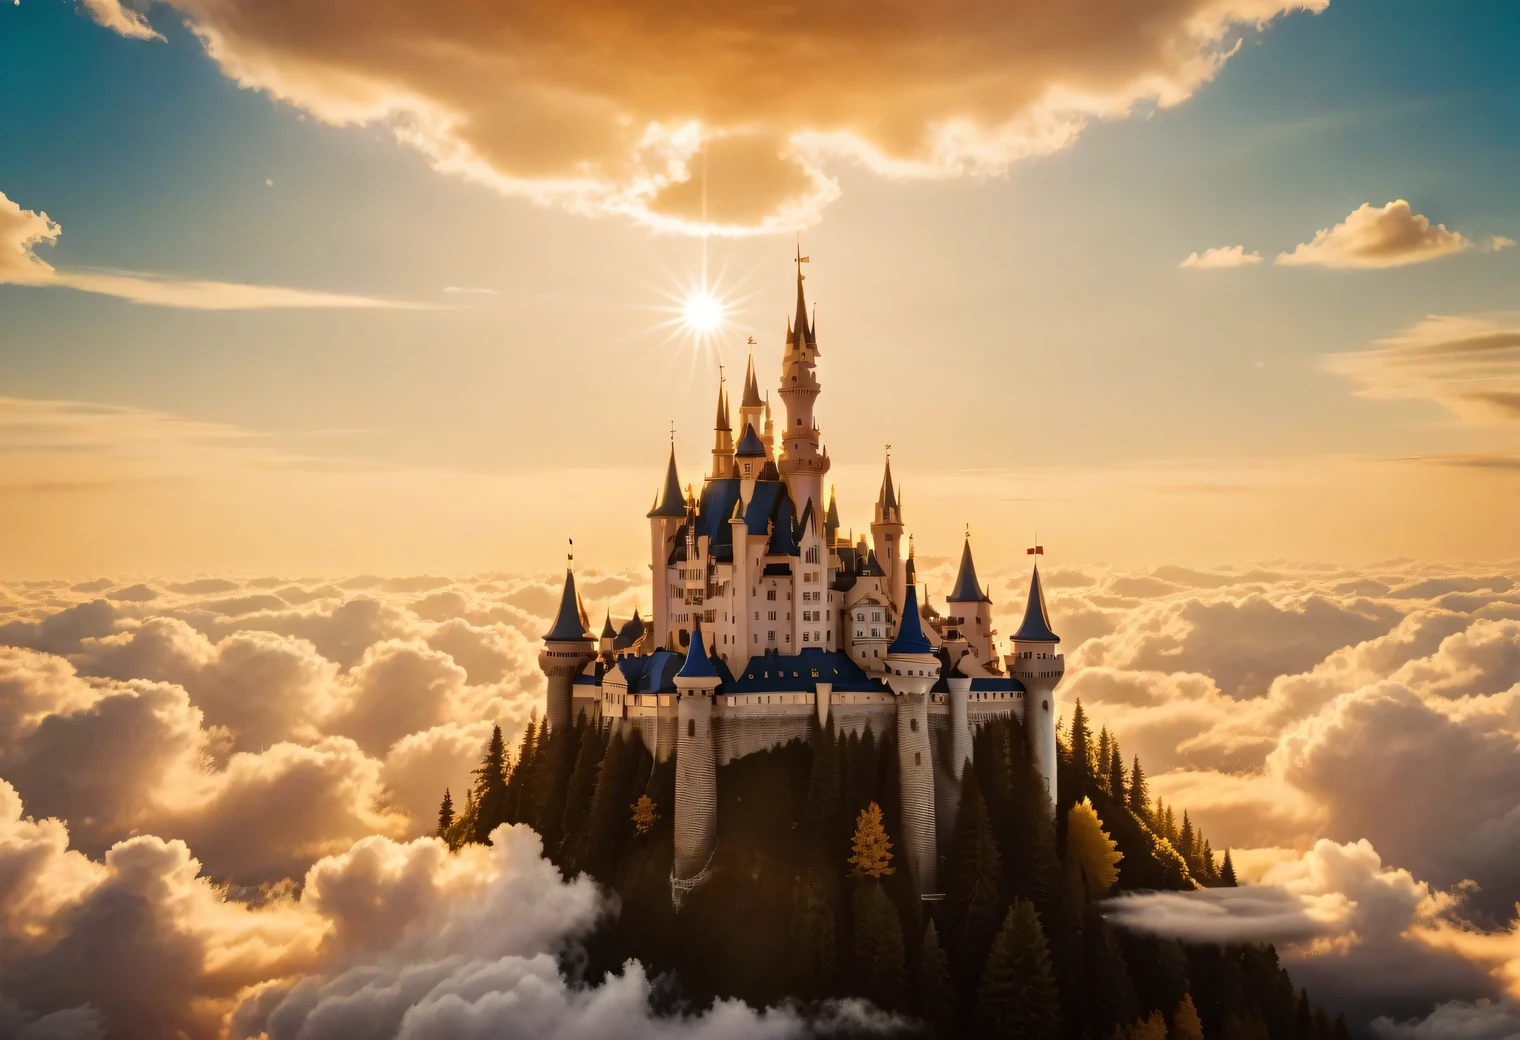 analoge Fotografie, Da ist ein leuchtendes Traumschloss am Himmel zwischen den Wolken, Dream Castle ist sehr schön und exquisit, umgeben von Wolken und goldenem Glanz und goldenem Licht, Strahlen goldenen Lichts strahlen vom Traumschloss aus, Realistisch, ausführlich, hohe Auflösung, 32k,analoges Foto